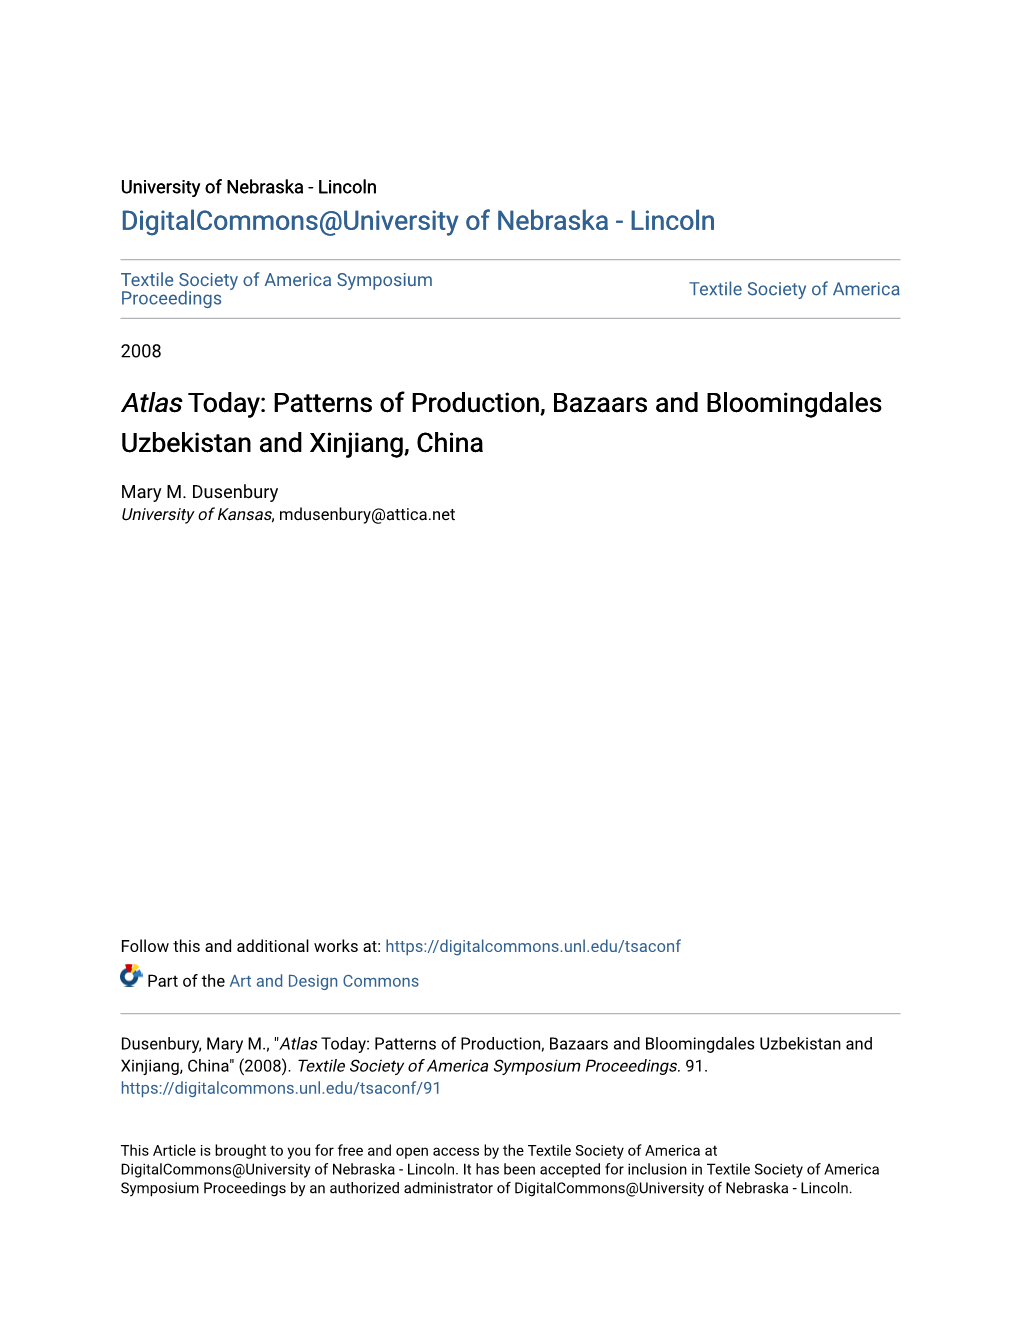 Atlas Today: Patterns of Production, Bazaars and Bloomingdales Uzbekistan and Xinjiang, China